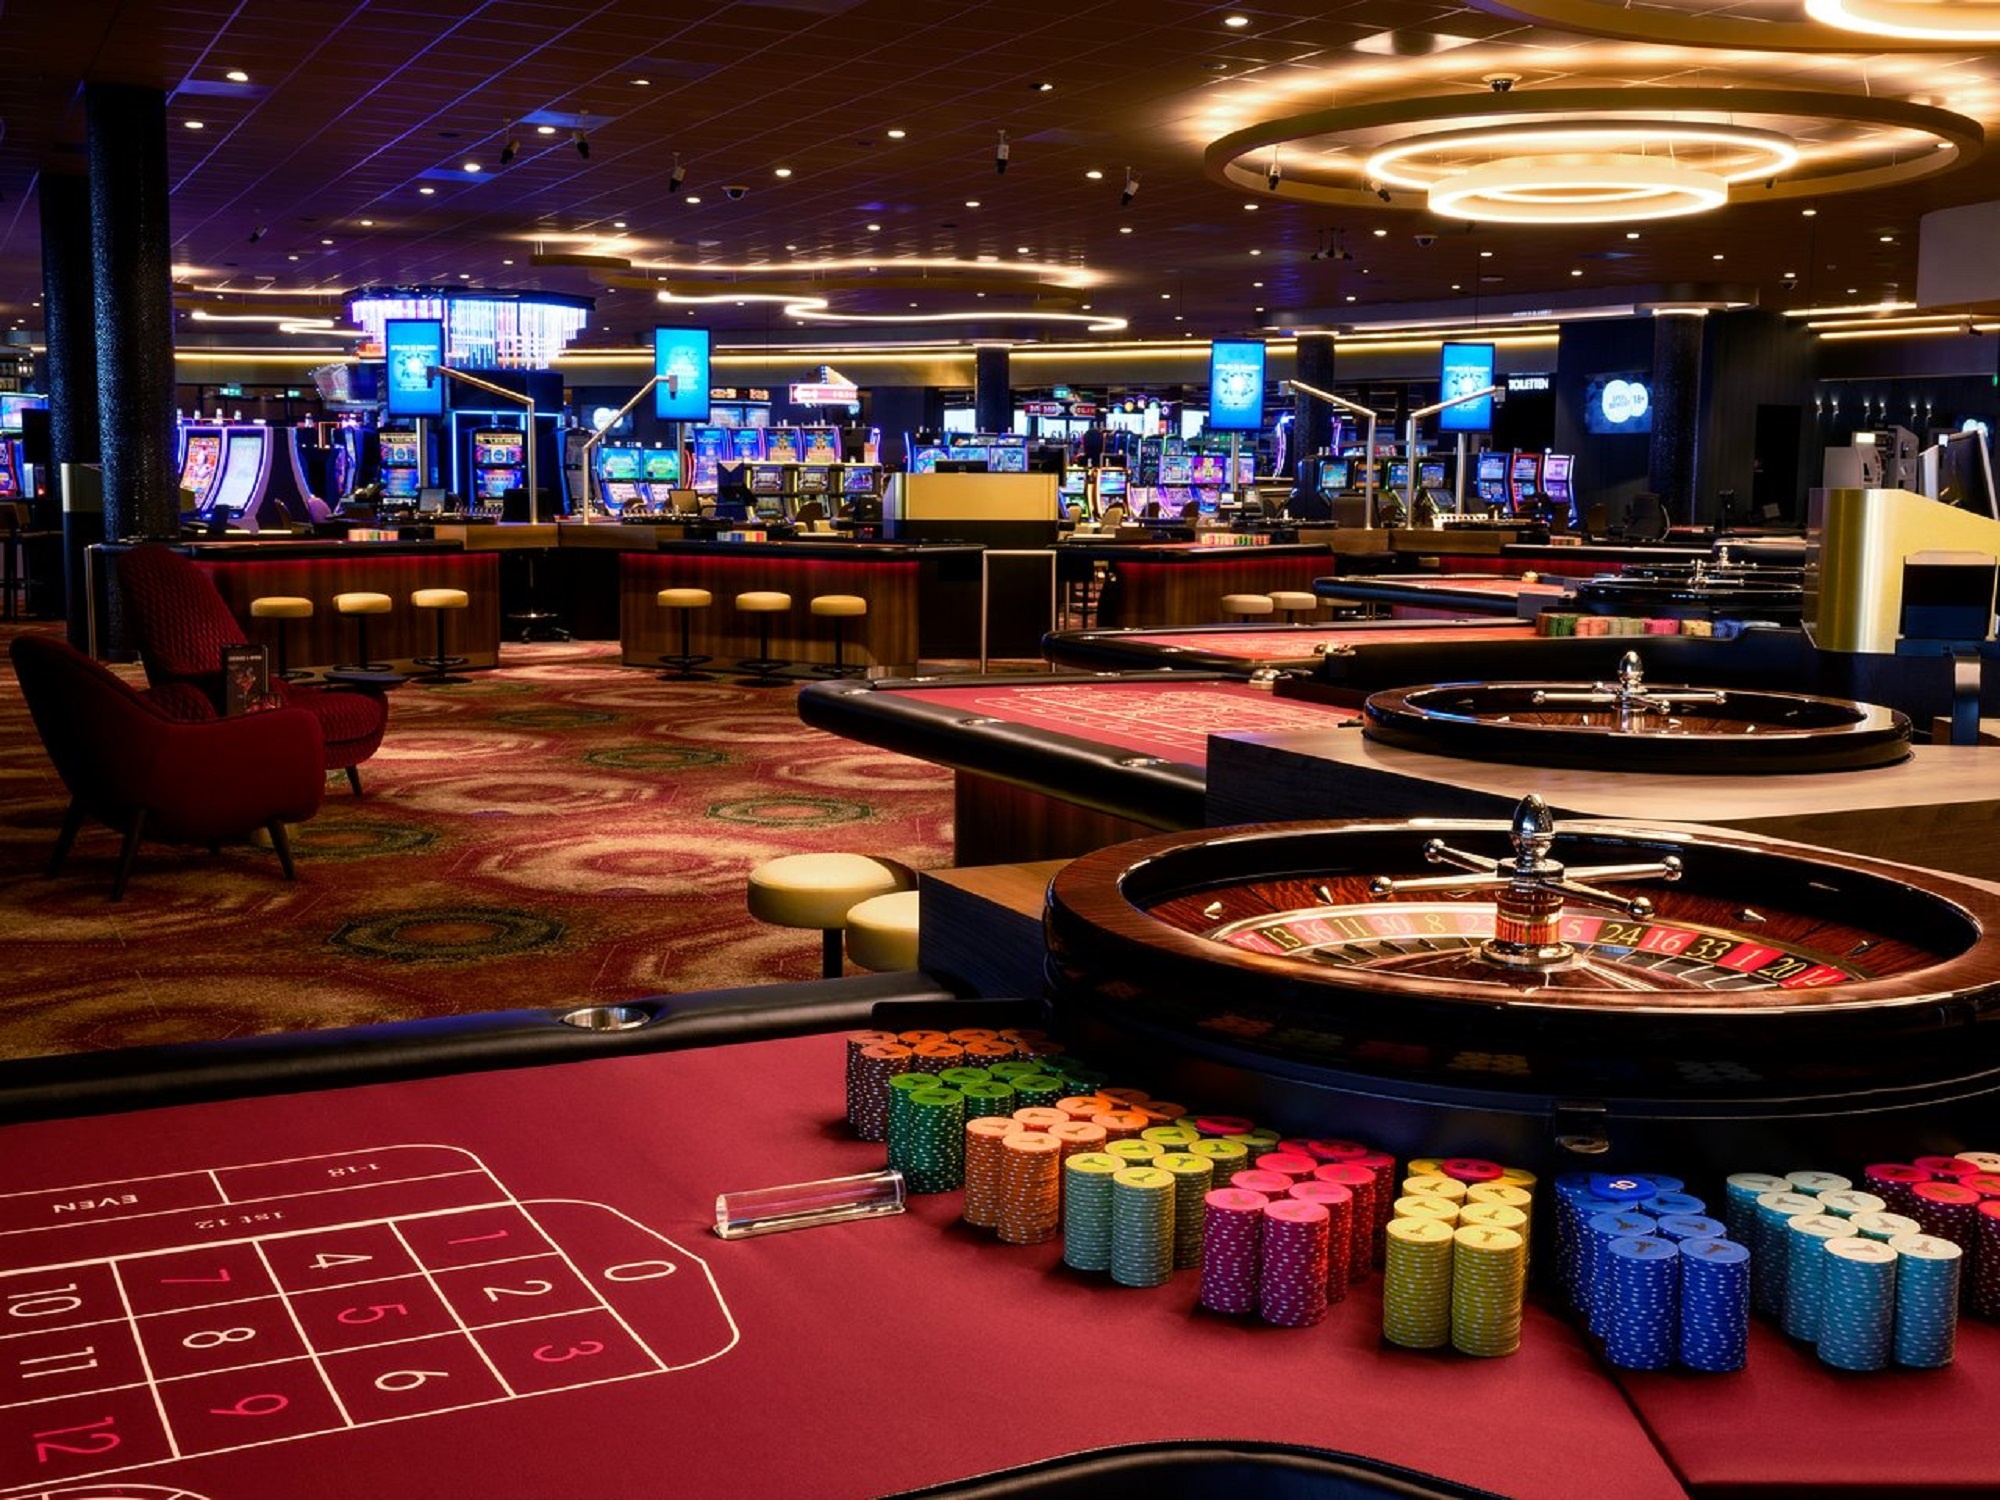 Сайт starda casino stardacasinoopen win. Нидерланды- Холланд казино. Казино «Holland Casino» в Амстердаме. Зал казино. Красивое казино.